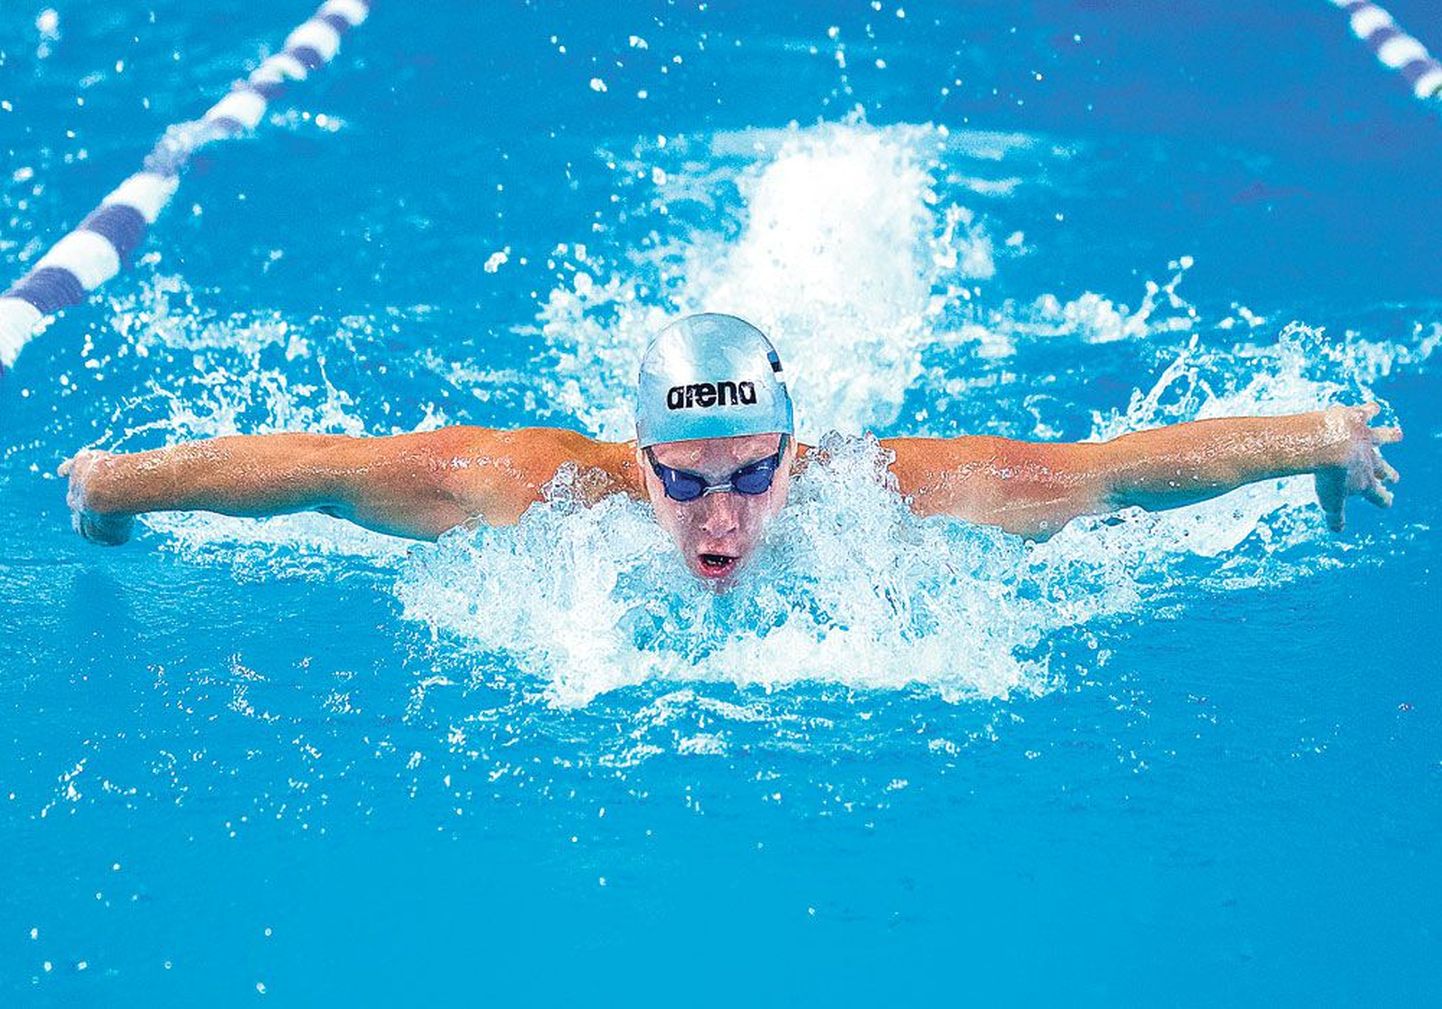 Для Мартина Лийвамяги чемпионат Европы по плаванию сложился крайне удачно – 
спортсмен пробился в финал как в индивидуальном зачете, так и в командной эстафете.